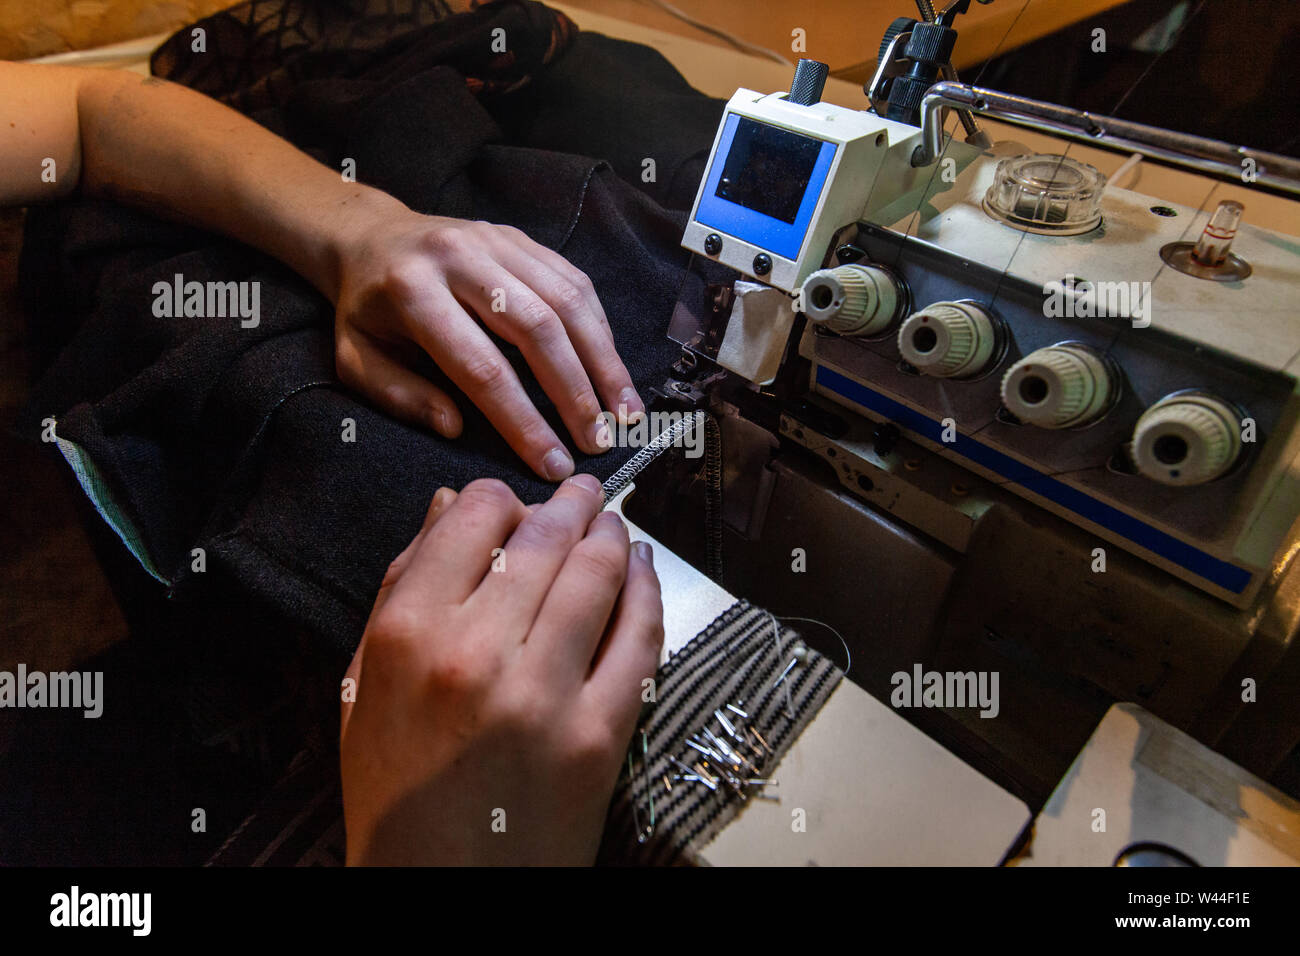 Mani di una sarta sono visti utilizzando una macchina taglia-e-cuci dentro la sua officina. Overlocking pezzi di tessuto durante lo sviluppo di vestiti. Foto Stock